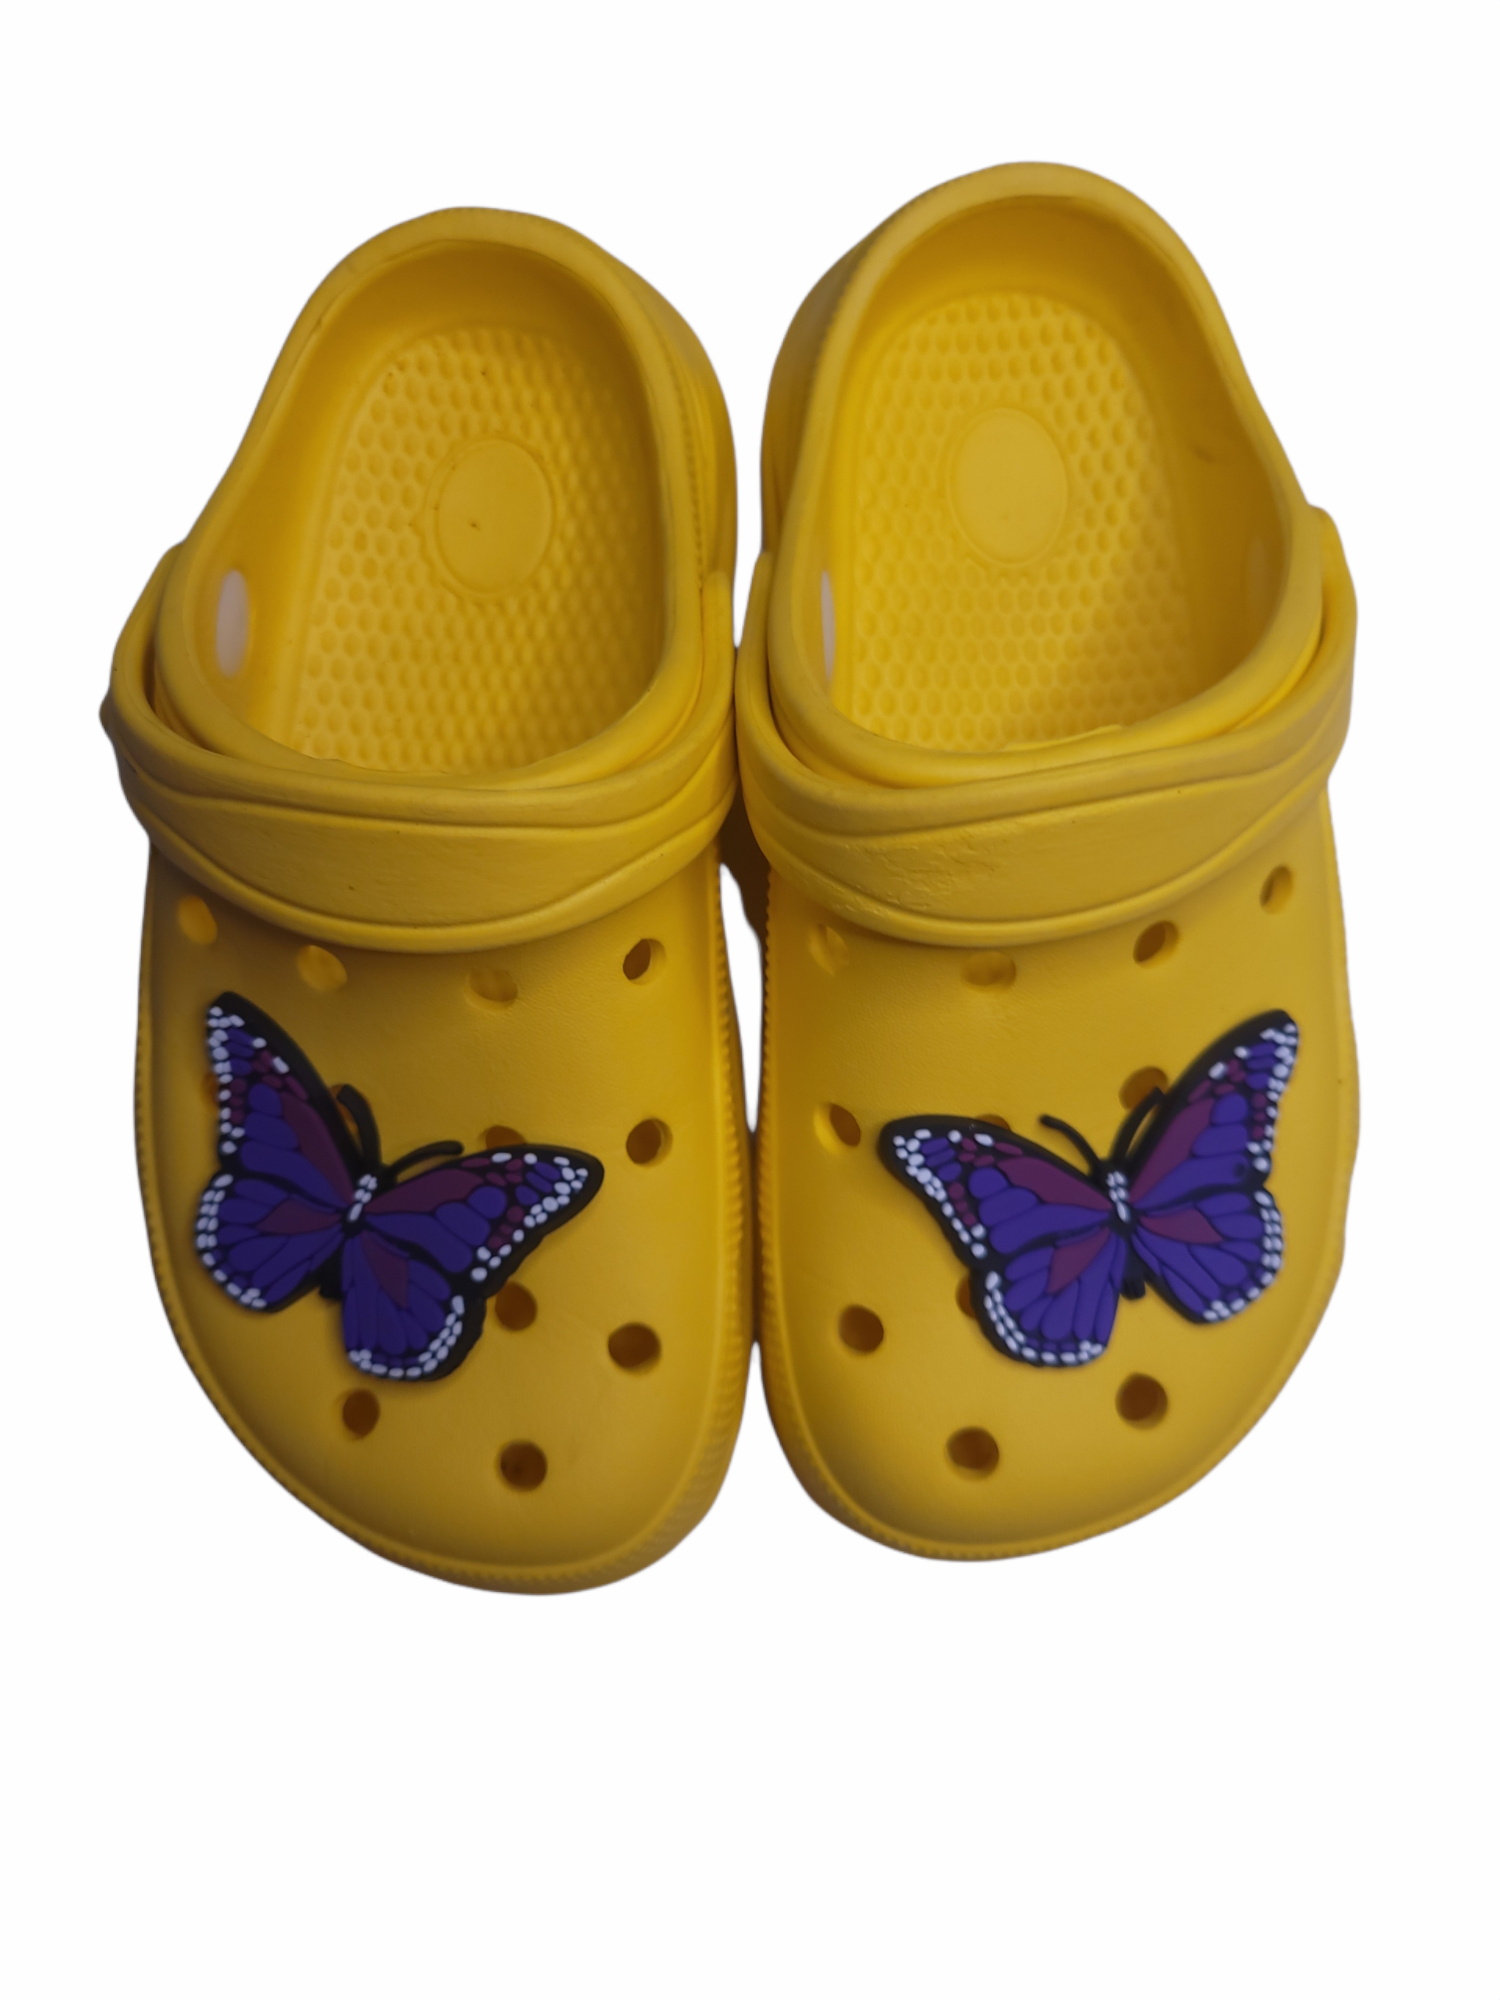 Purple Butterfly Shoe Charm